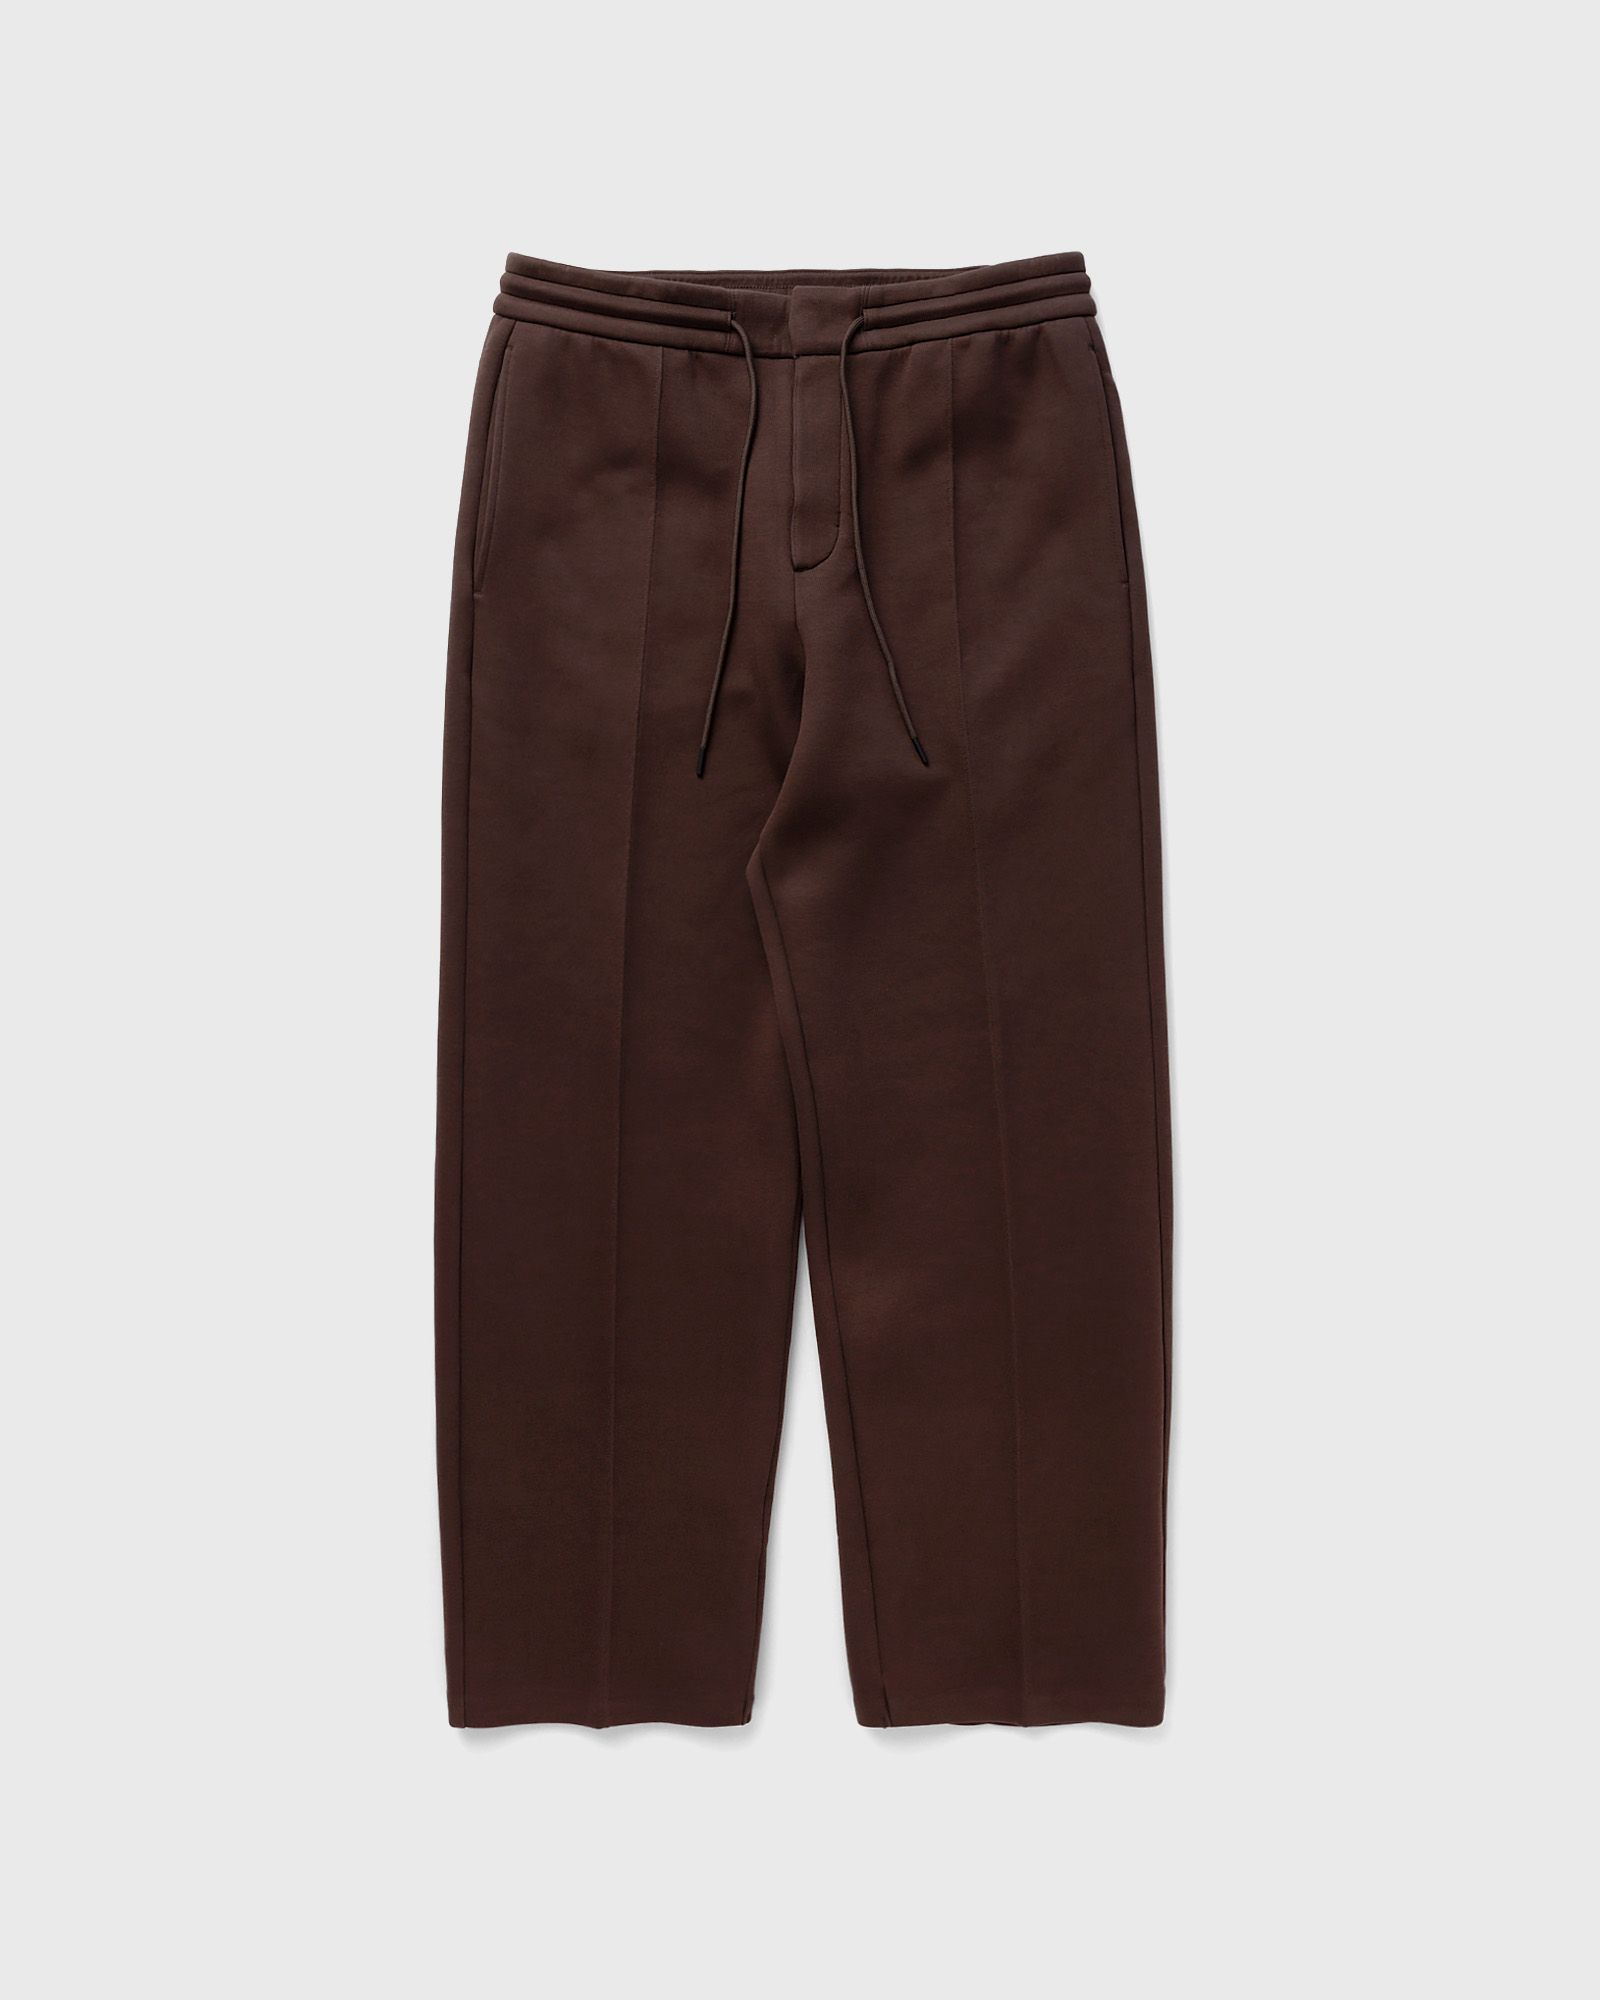 Nike - tech fleece reimagined loose fit open hem sweatpants men casual pants brown in größe:l